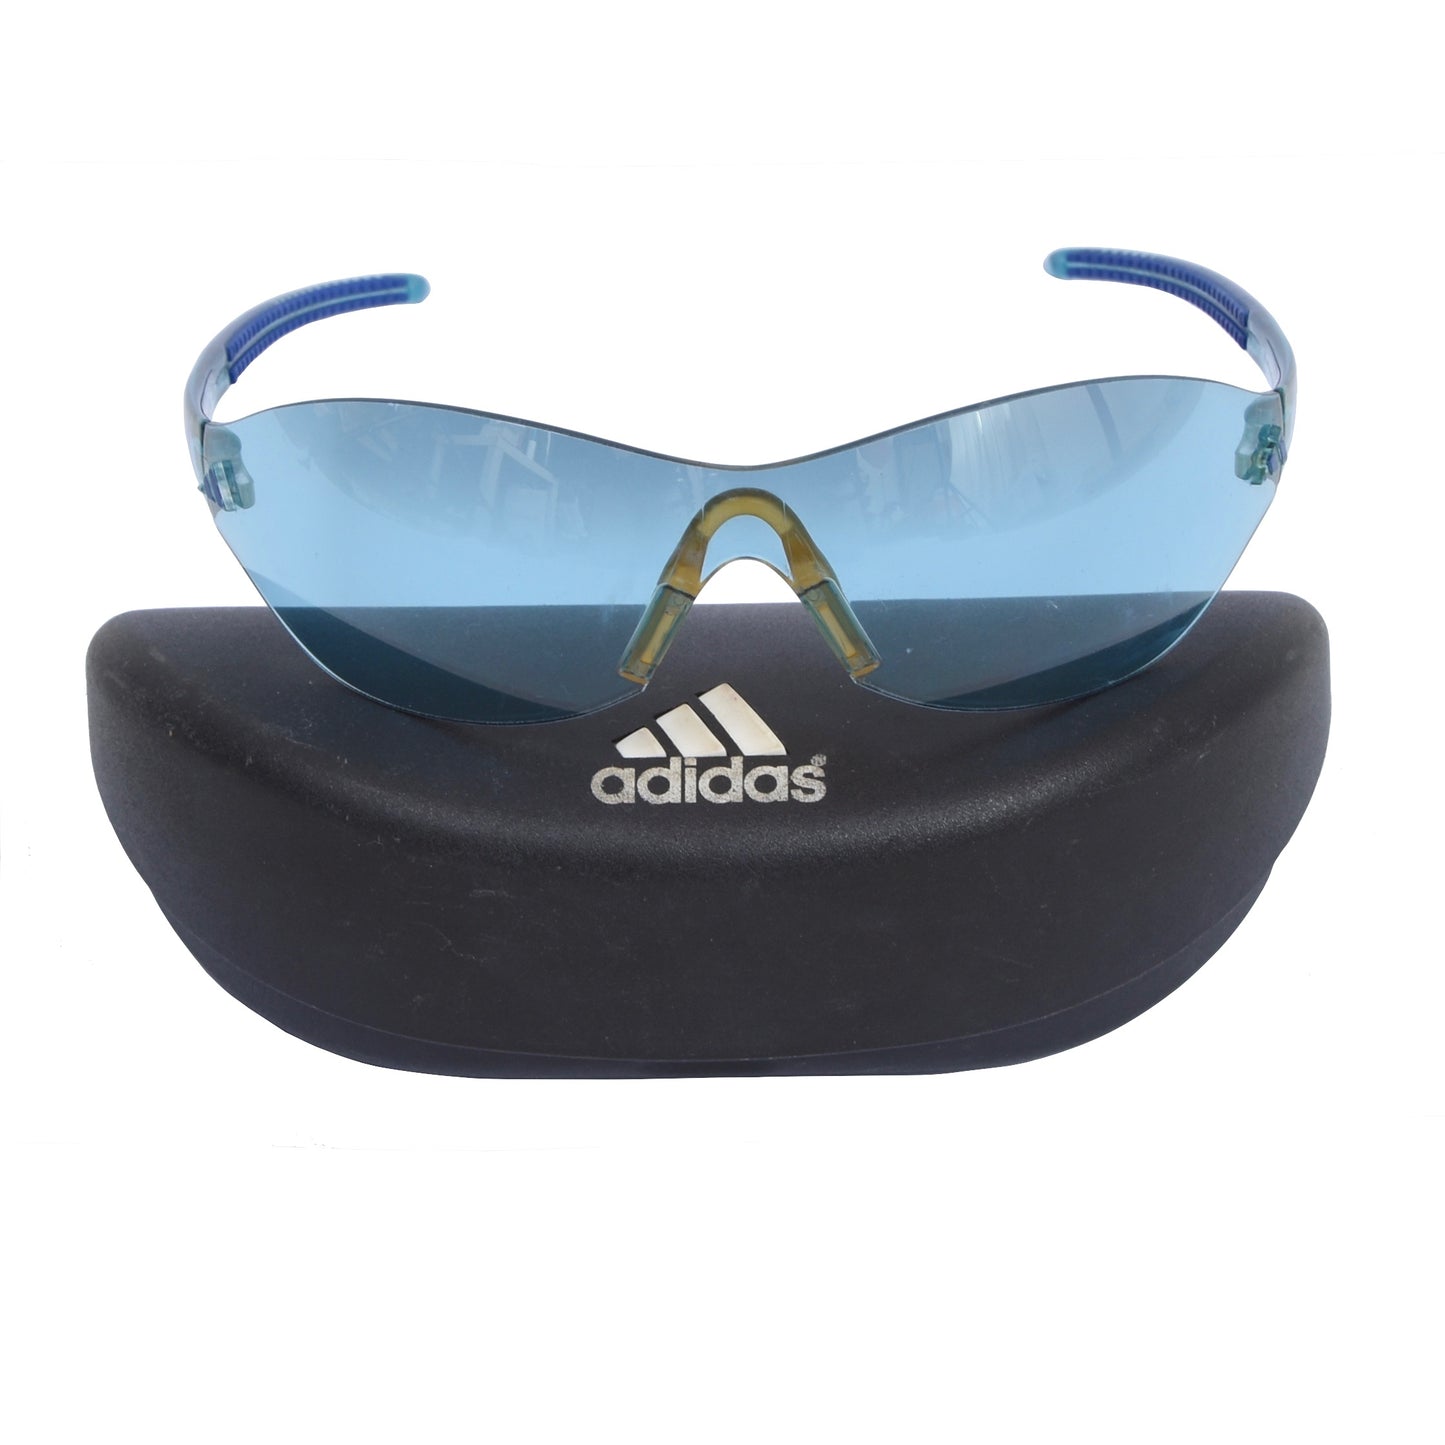 Adidas A262 6061 The Shield Sonnenbrille - Blau